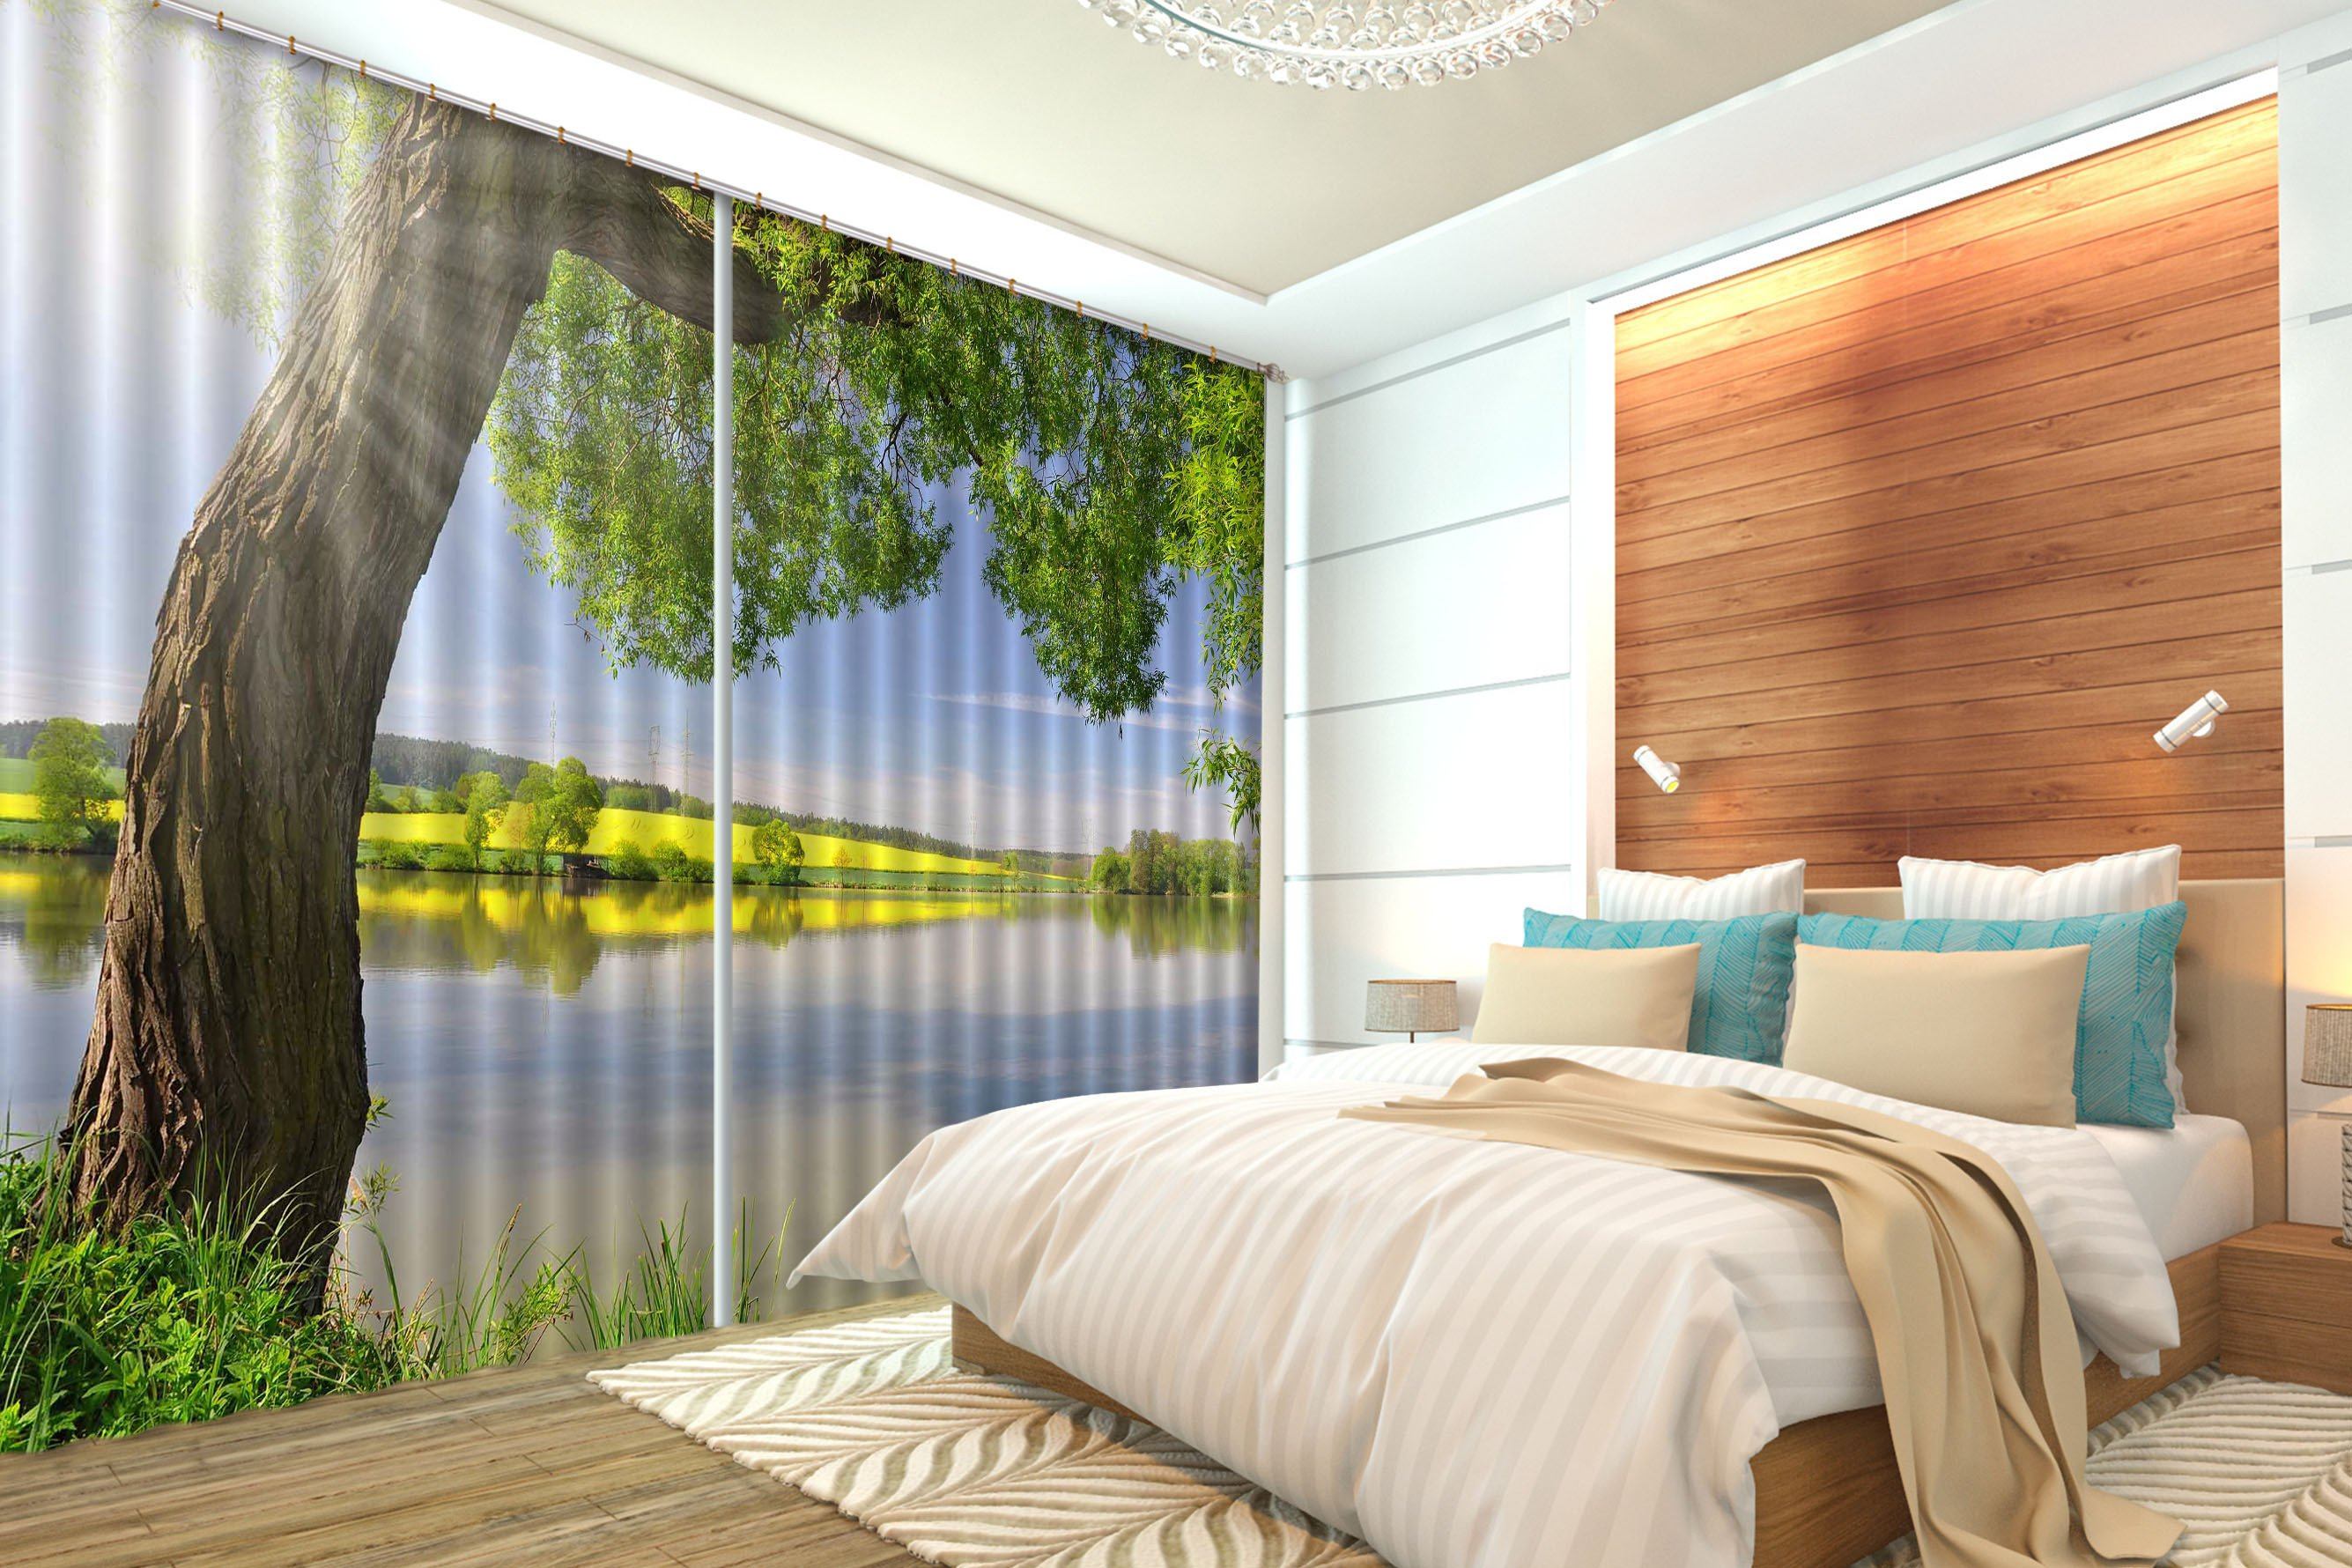 3D Lakeside Tree 301 Curtains Drapes Wallpaper AJ Wallpaper 